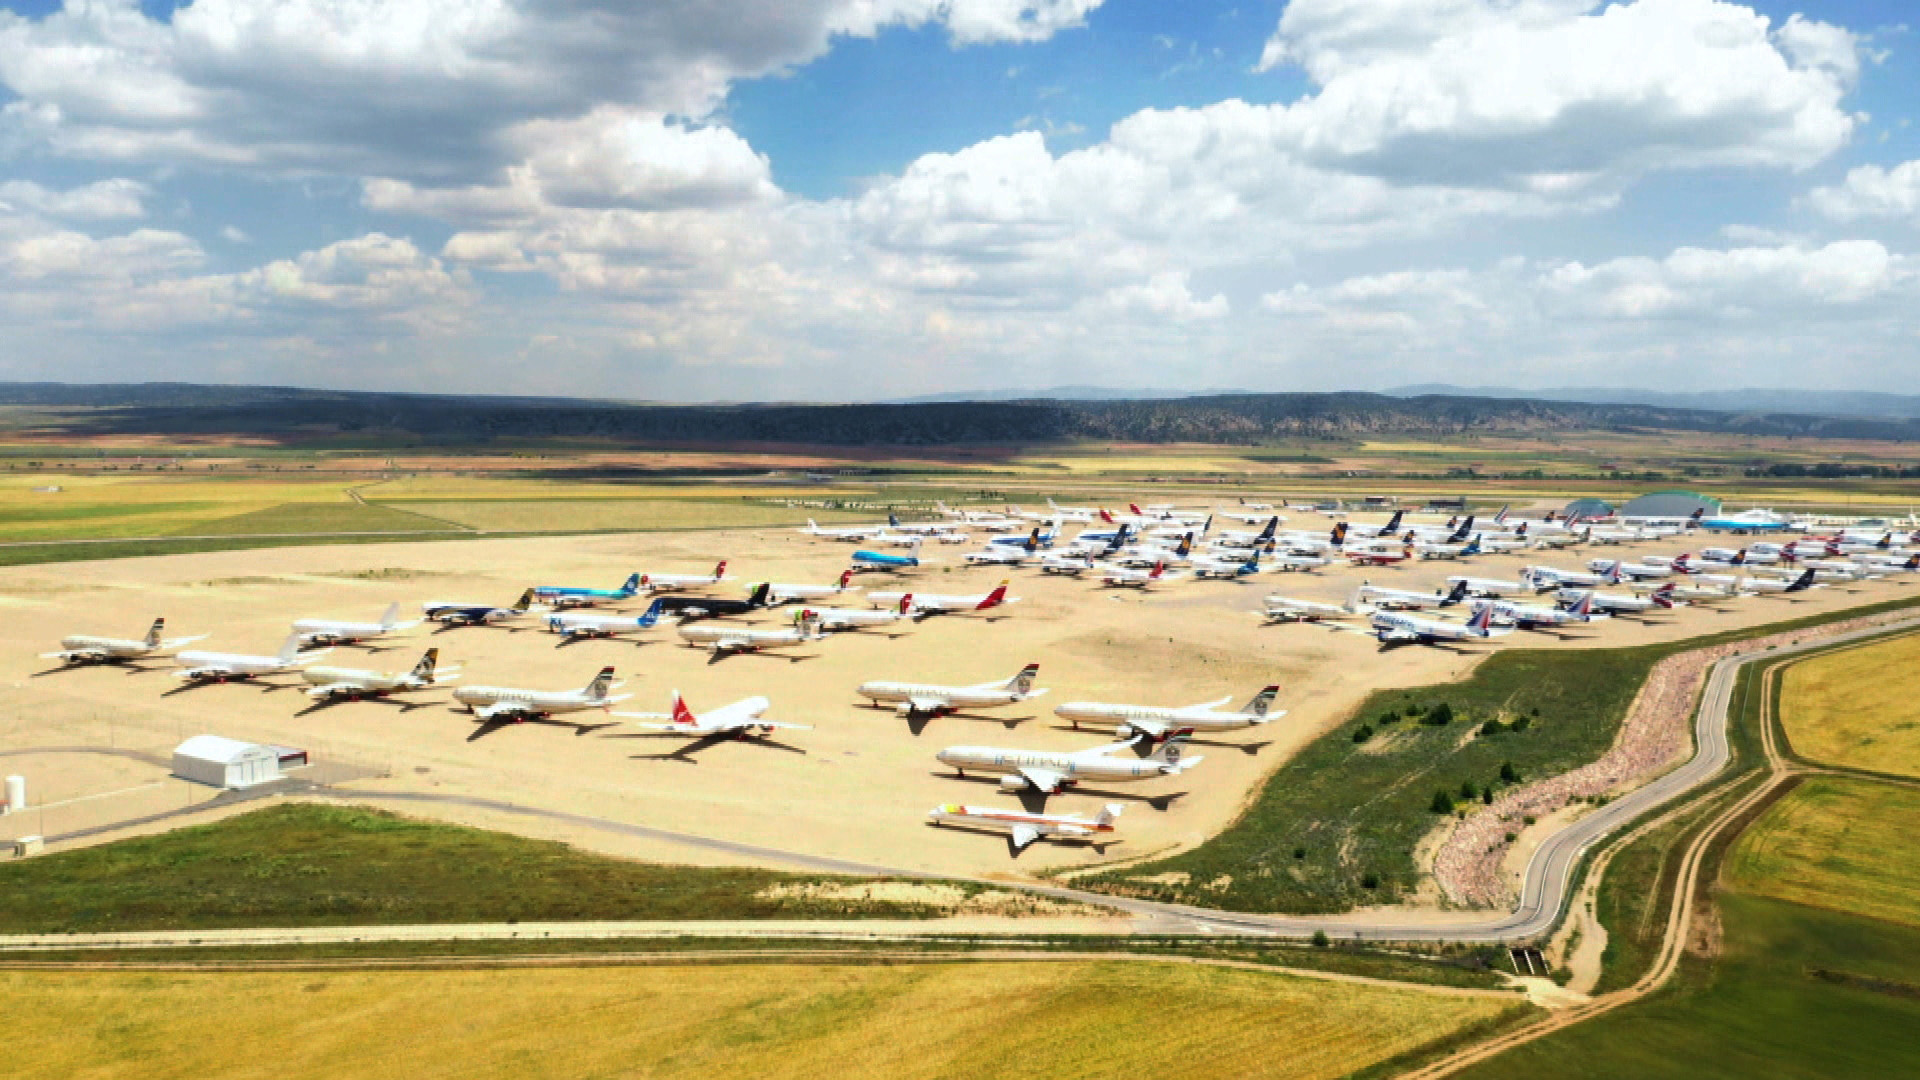 Teruel: Wo Flugzeuge wieder zum Leben erweckt werden